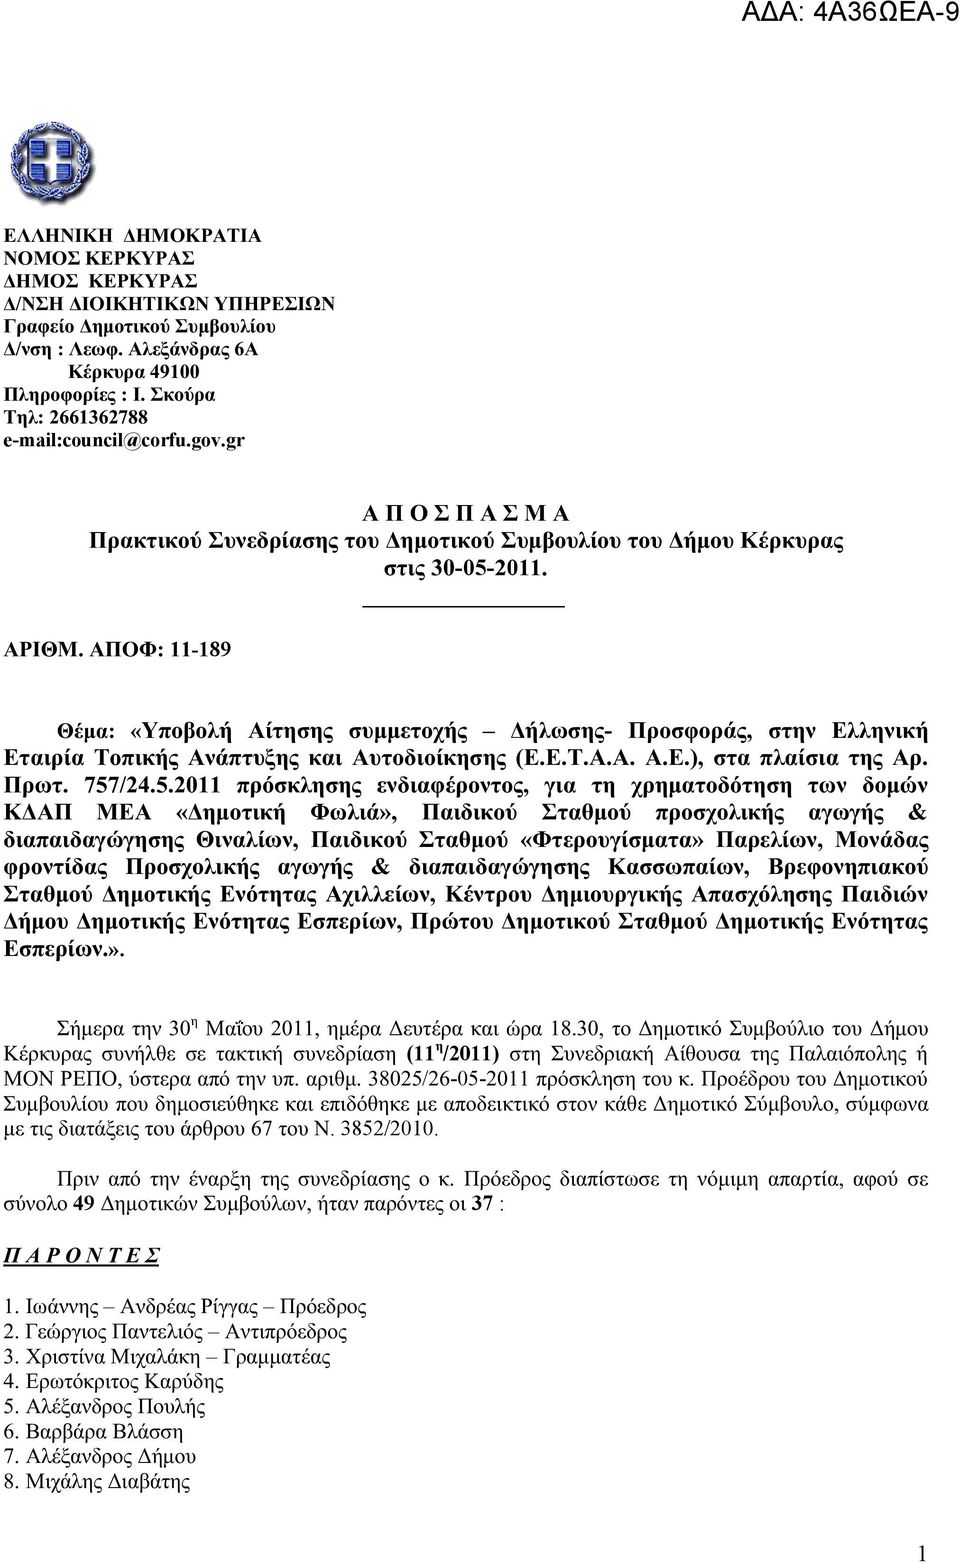 ΑΠΟΦ: 11-189 Θέμα: «Υποβολή Αίτησης συμμετοχής Δήλωσης- Προσφοράς, στην Ελληνική Εταιρία Τοπικής Ανάπτυξης και Αυτοδιοίκησης (Ε.Ε.Τ.Α.Α. Α.Ε.), στα πλαίσια της Αρ. Πρωτ. 757